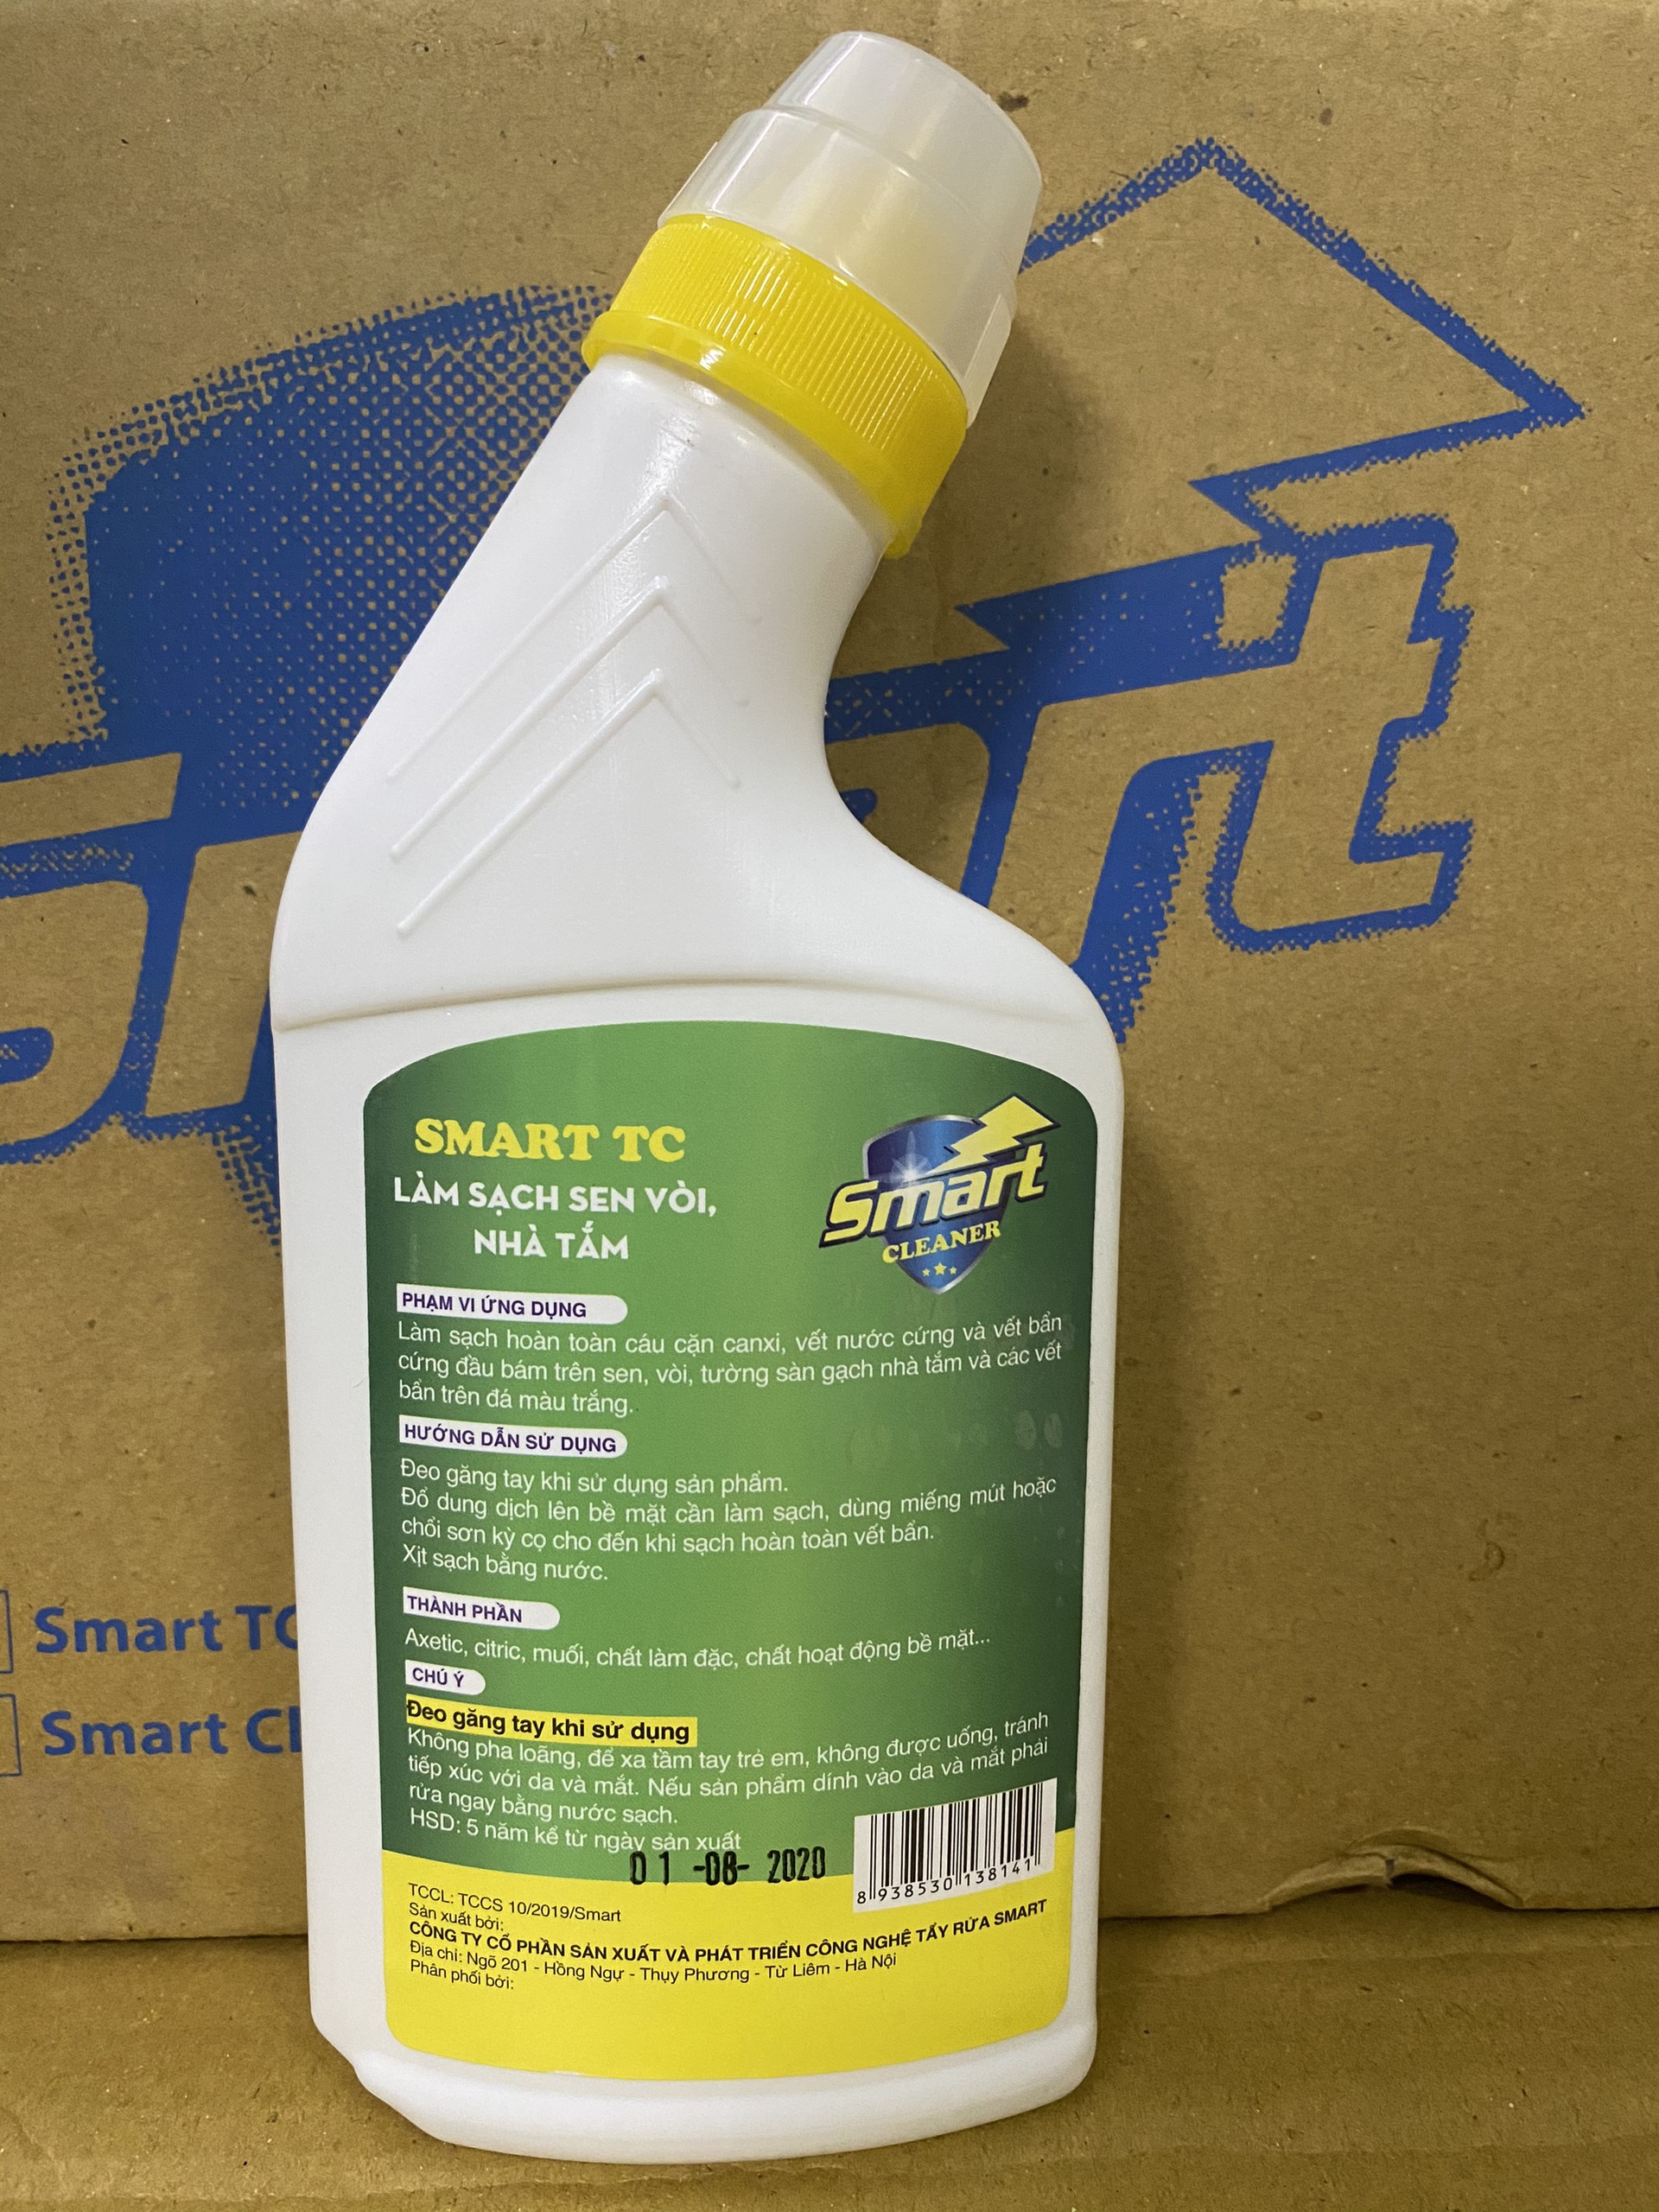 Bộ sản phẩm tẩy rửa gia đình thông minh Smart (300ml) : Smart TC (tẩy inox) - Smart TK (tẩy kính) -  Smart TS (tẩy sứ) - Smart Cleaner (tẩy dầu mỡ) .Hàng chính hãng phân phối độc quyền tại khu vực miền nam